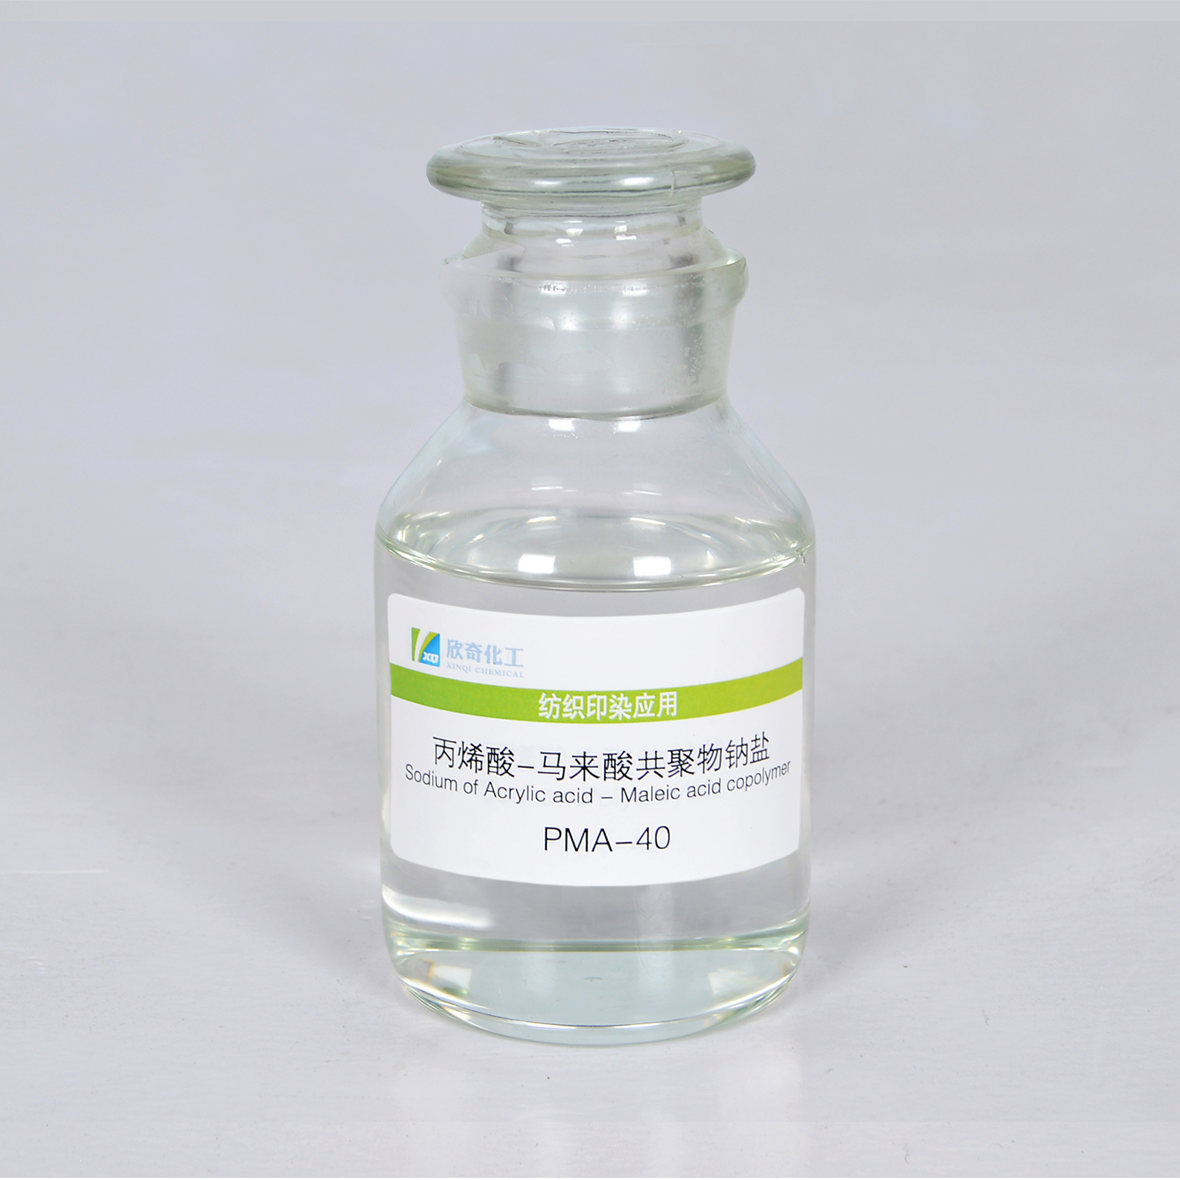 丙烯酸-马来酸共聚物钠盐 PMA-40